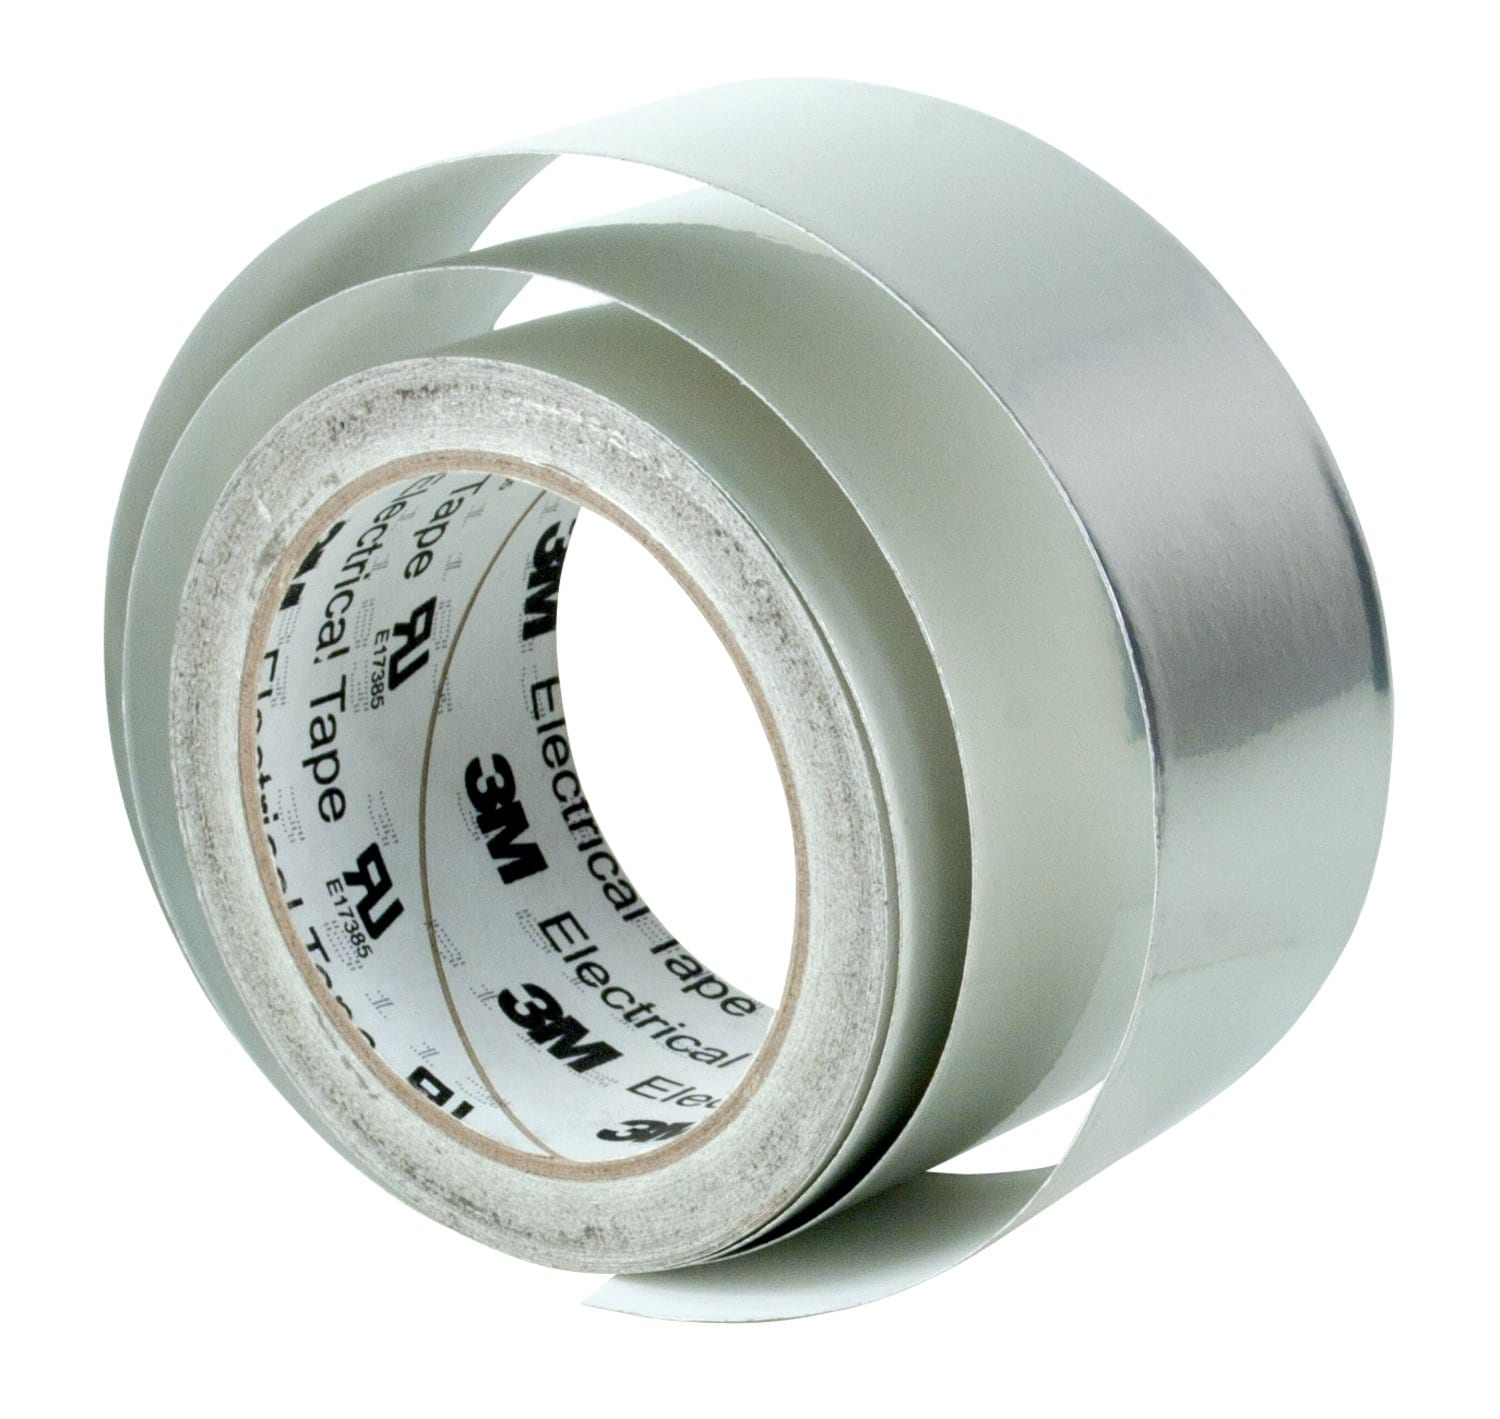 7010350304 - 3M Tin-Plated Copper Foil EMI Shielding Tape 1183, 1/2 in x 18 yd, 3 in
Paper Core, 18 Rolls/Case